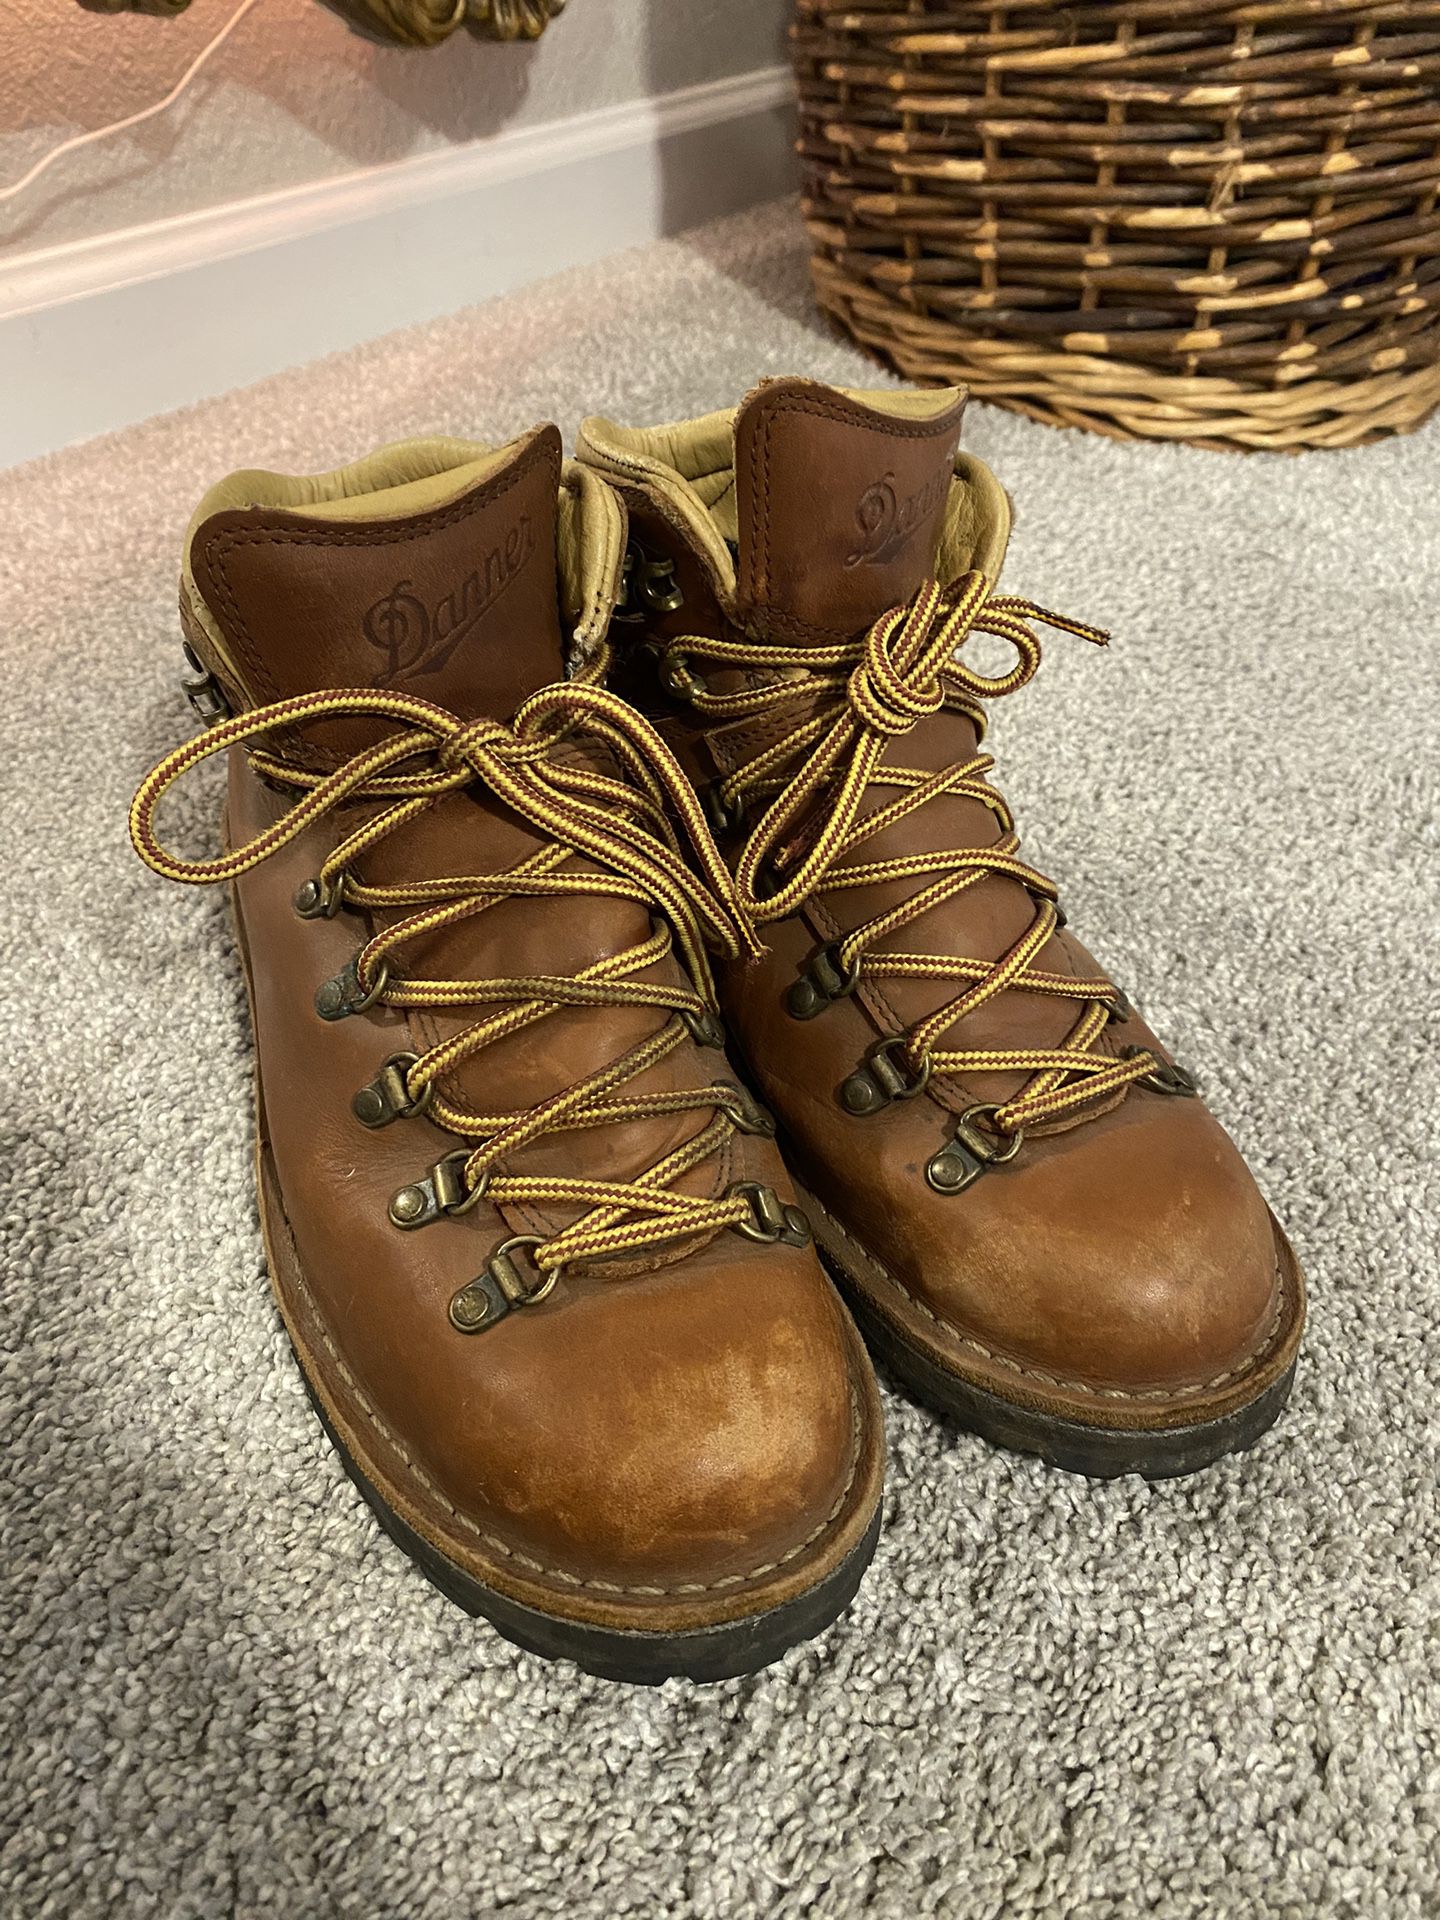 Danner Women’s Mountain Pass Cedar Hiking Boots Size 8